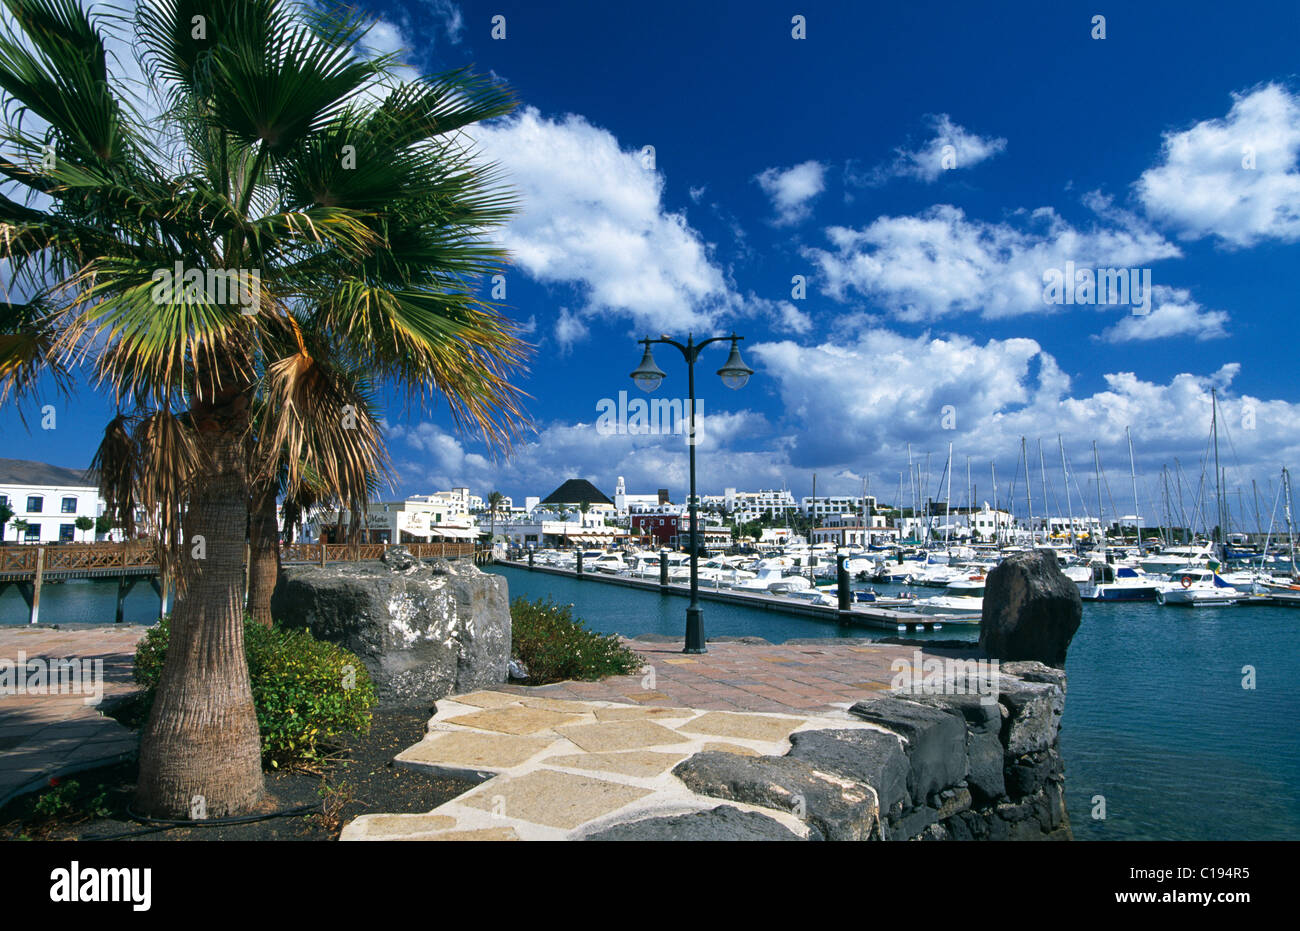 Port de Playa Blanca, Lanzarote, Canary Islands, Spain, Europe Banque D'Images